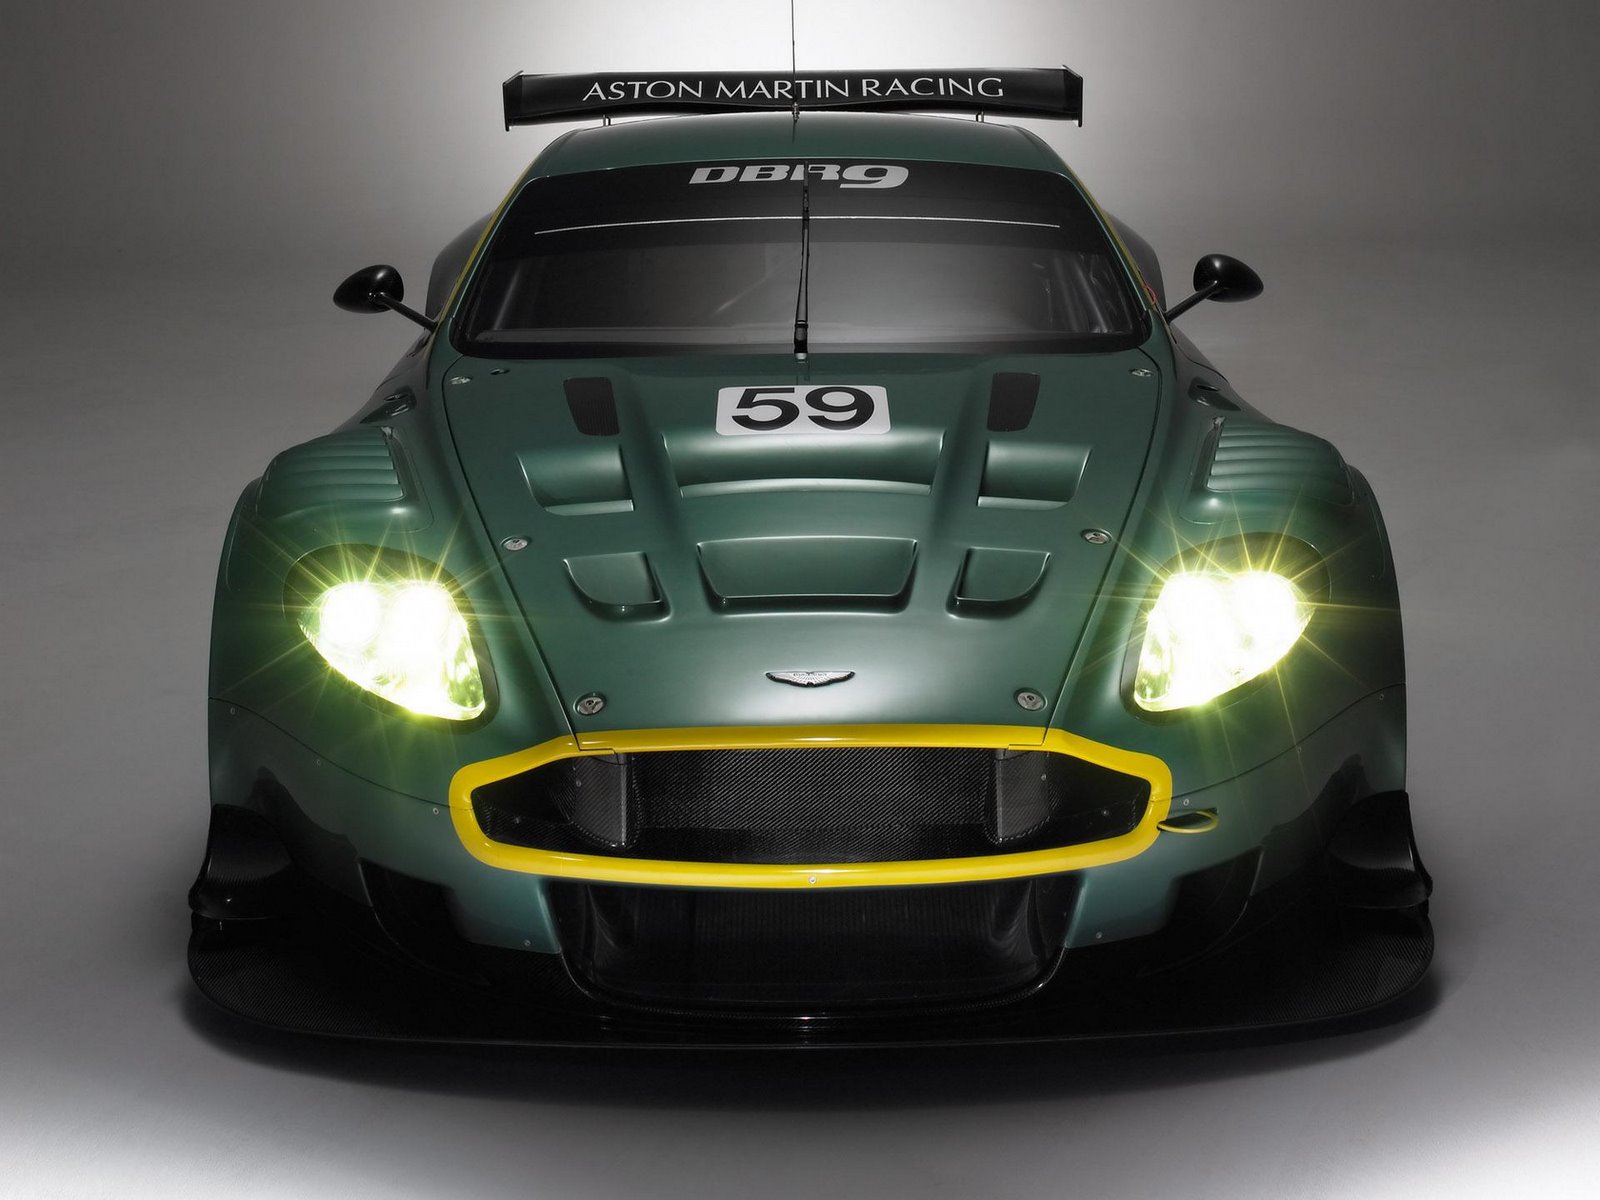 [Aston+Martin+DBR9+02++car+wallpaper+stockwallpapers.blogspot.com.jpg]